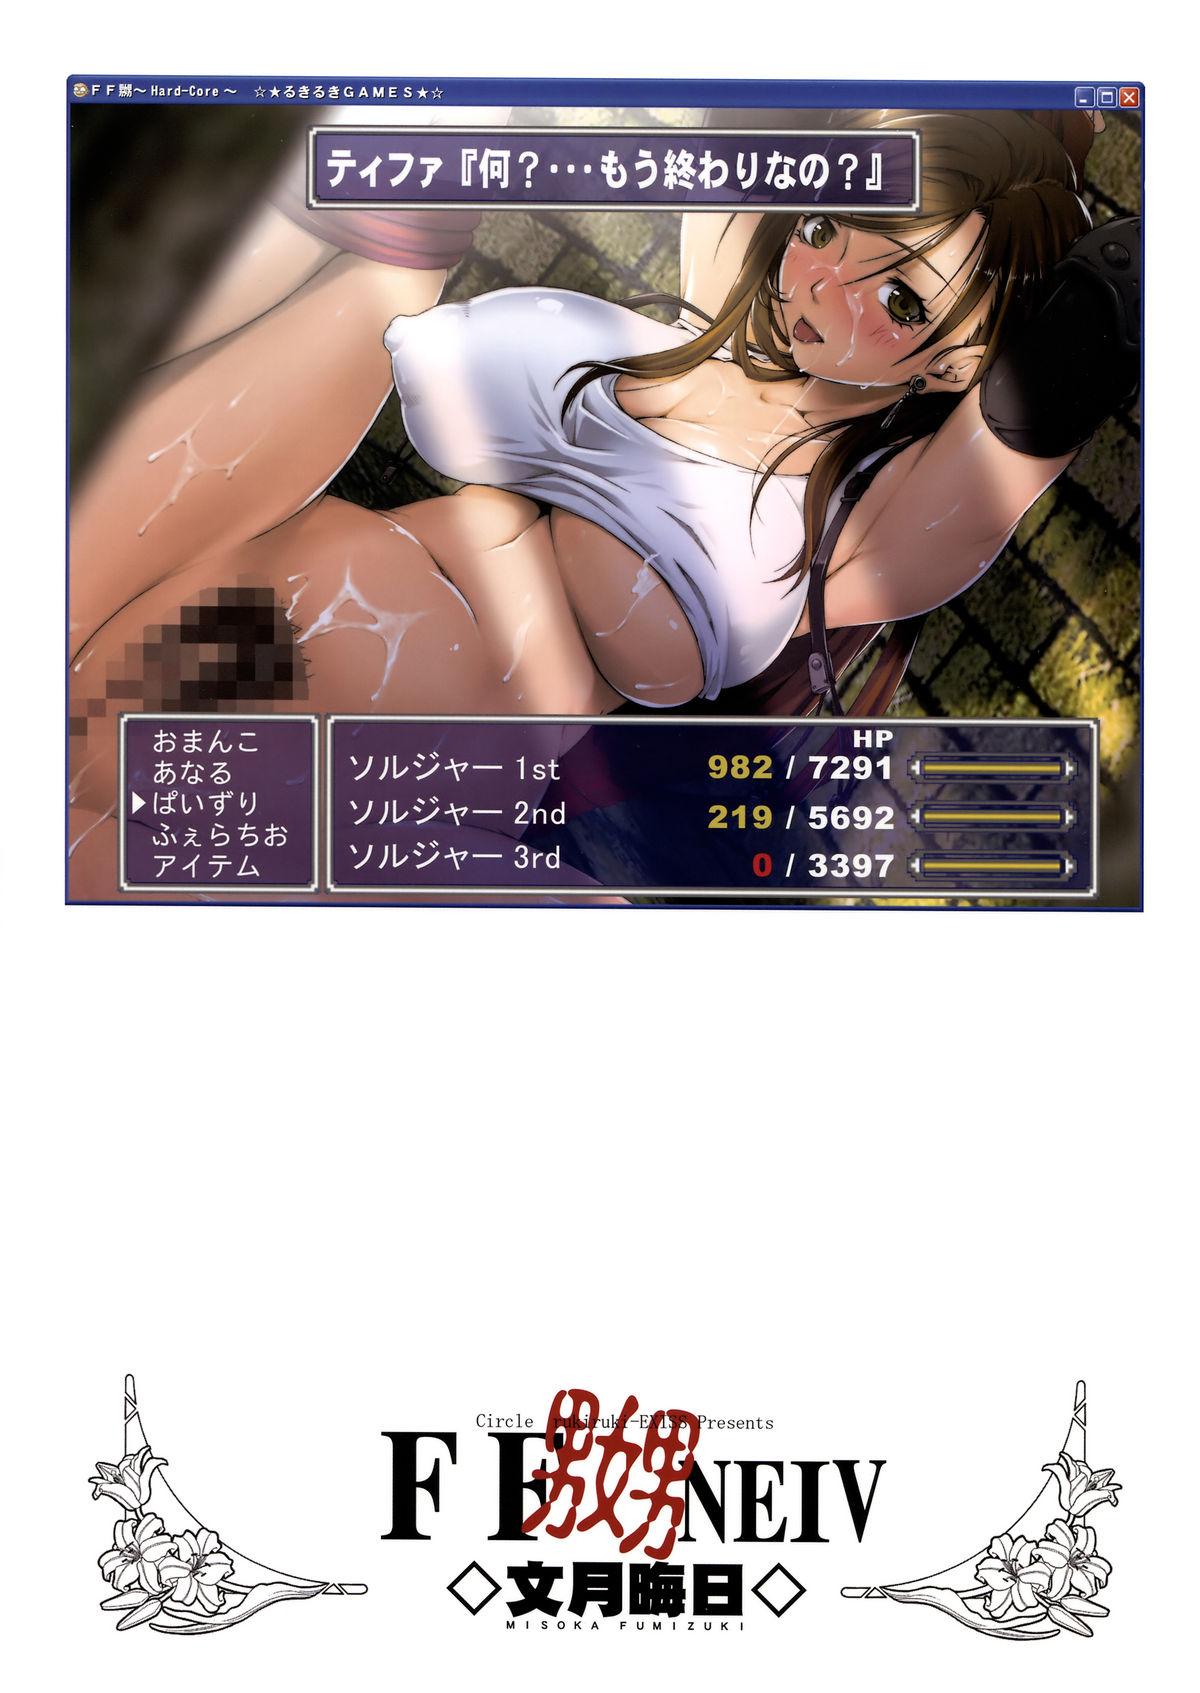 Striptease FF Naburu NEIV - Final fantasy vii Private Sex - Page 2